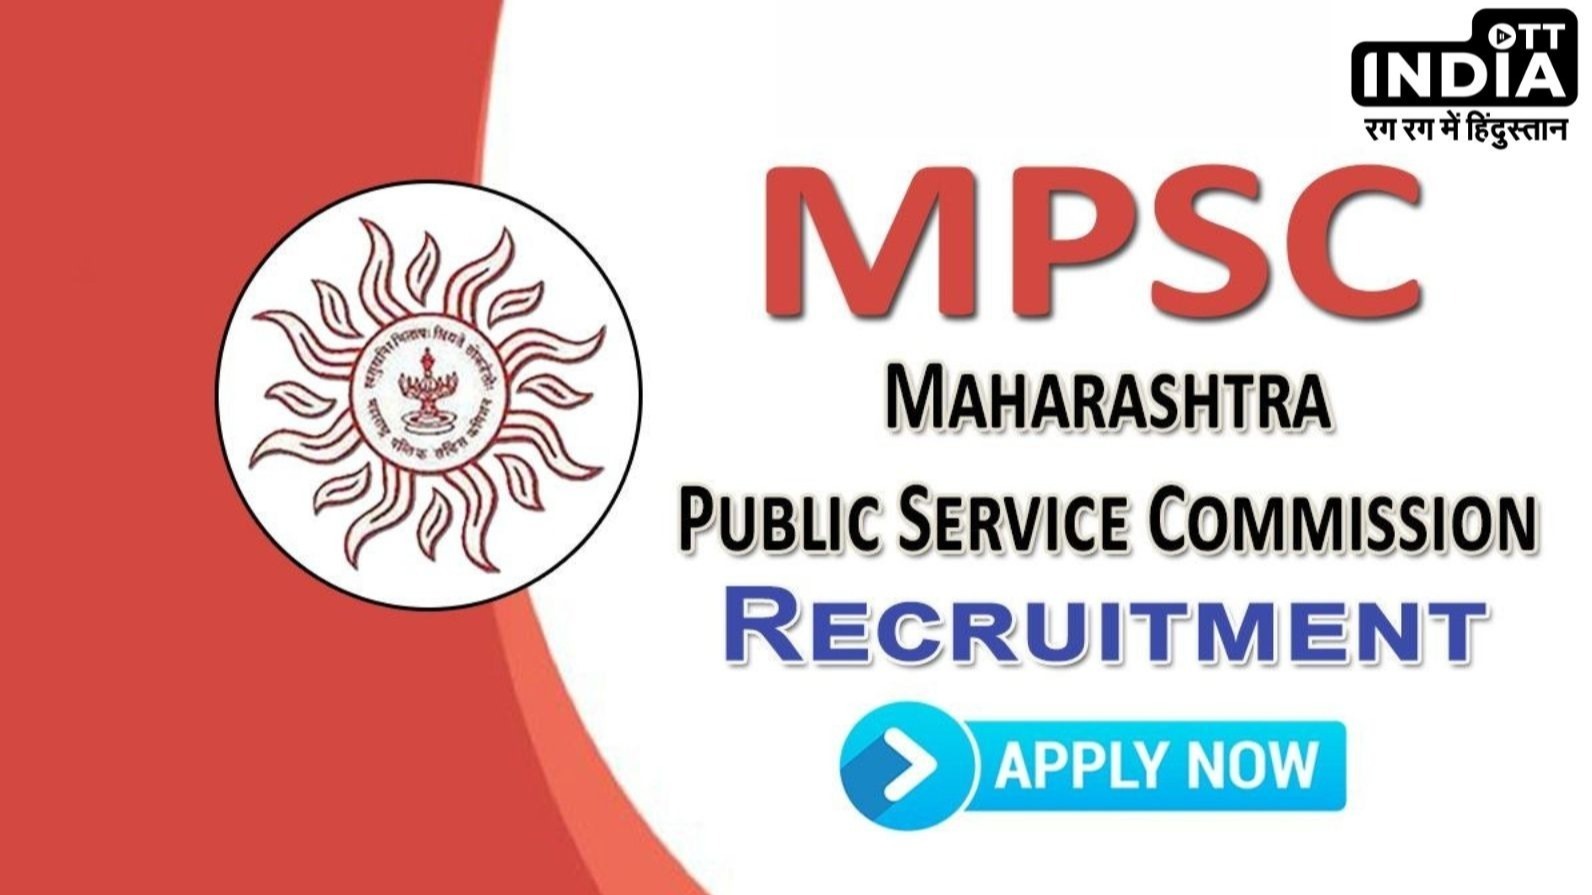 सरकारी नौकरी का शानदार मौका; MPSC के तहत निकली 673 Vacancies, ऐसे करें आवेदन